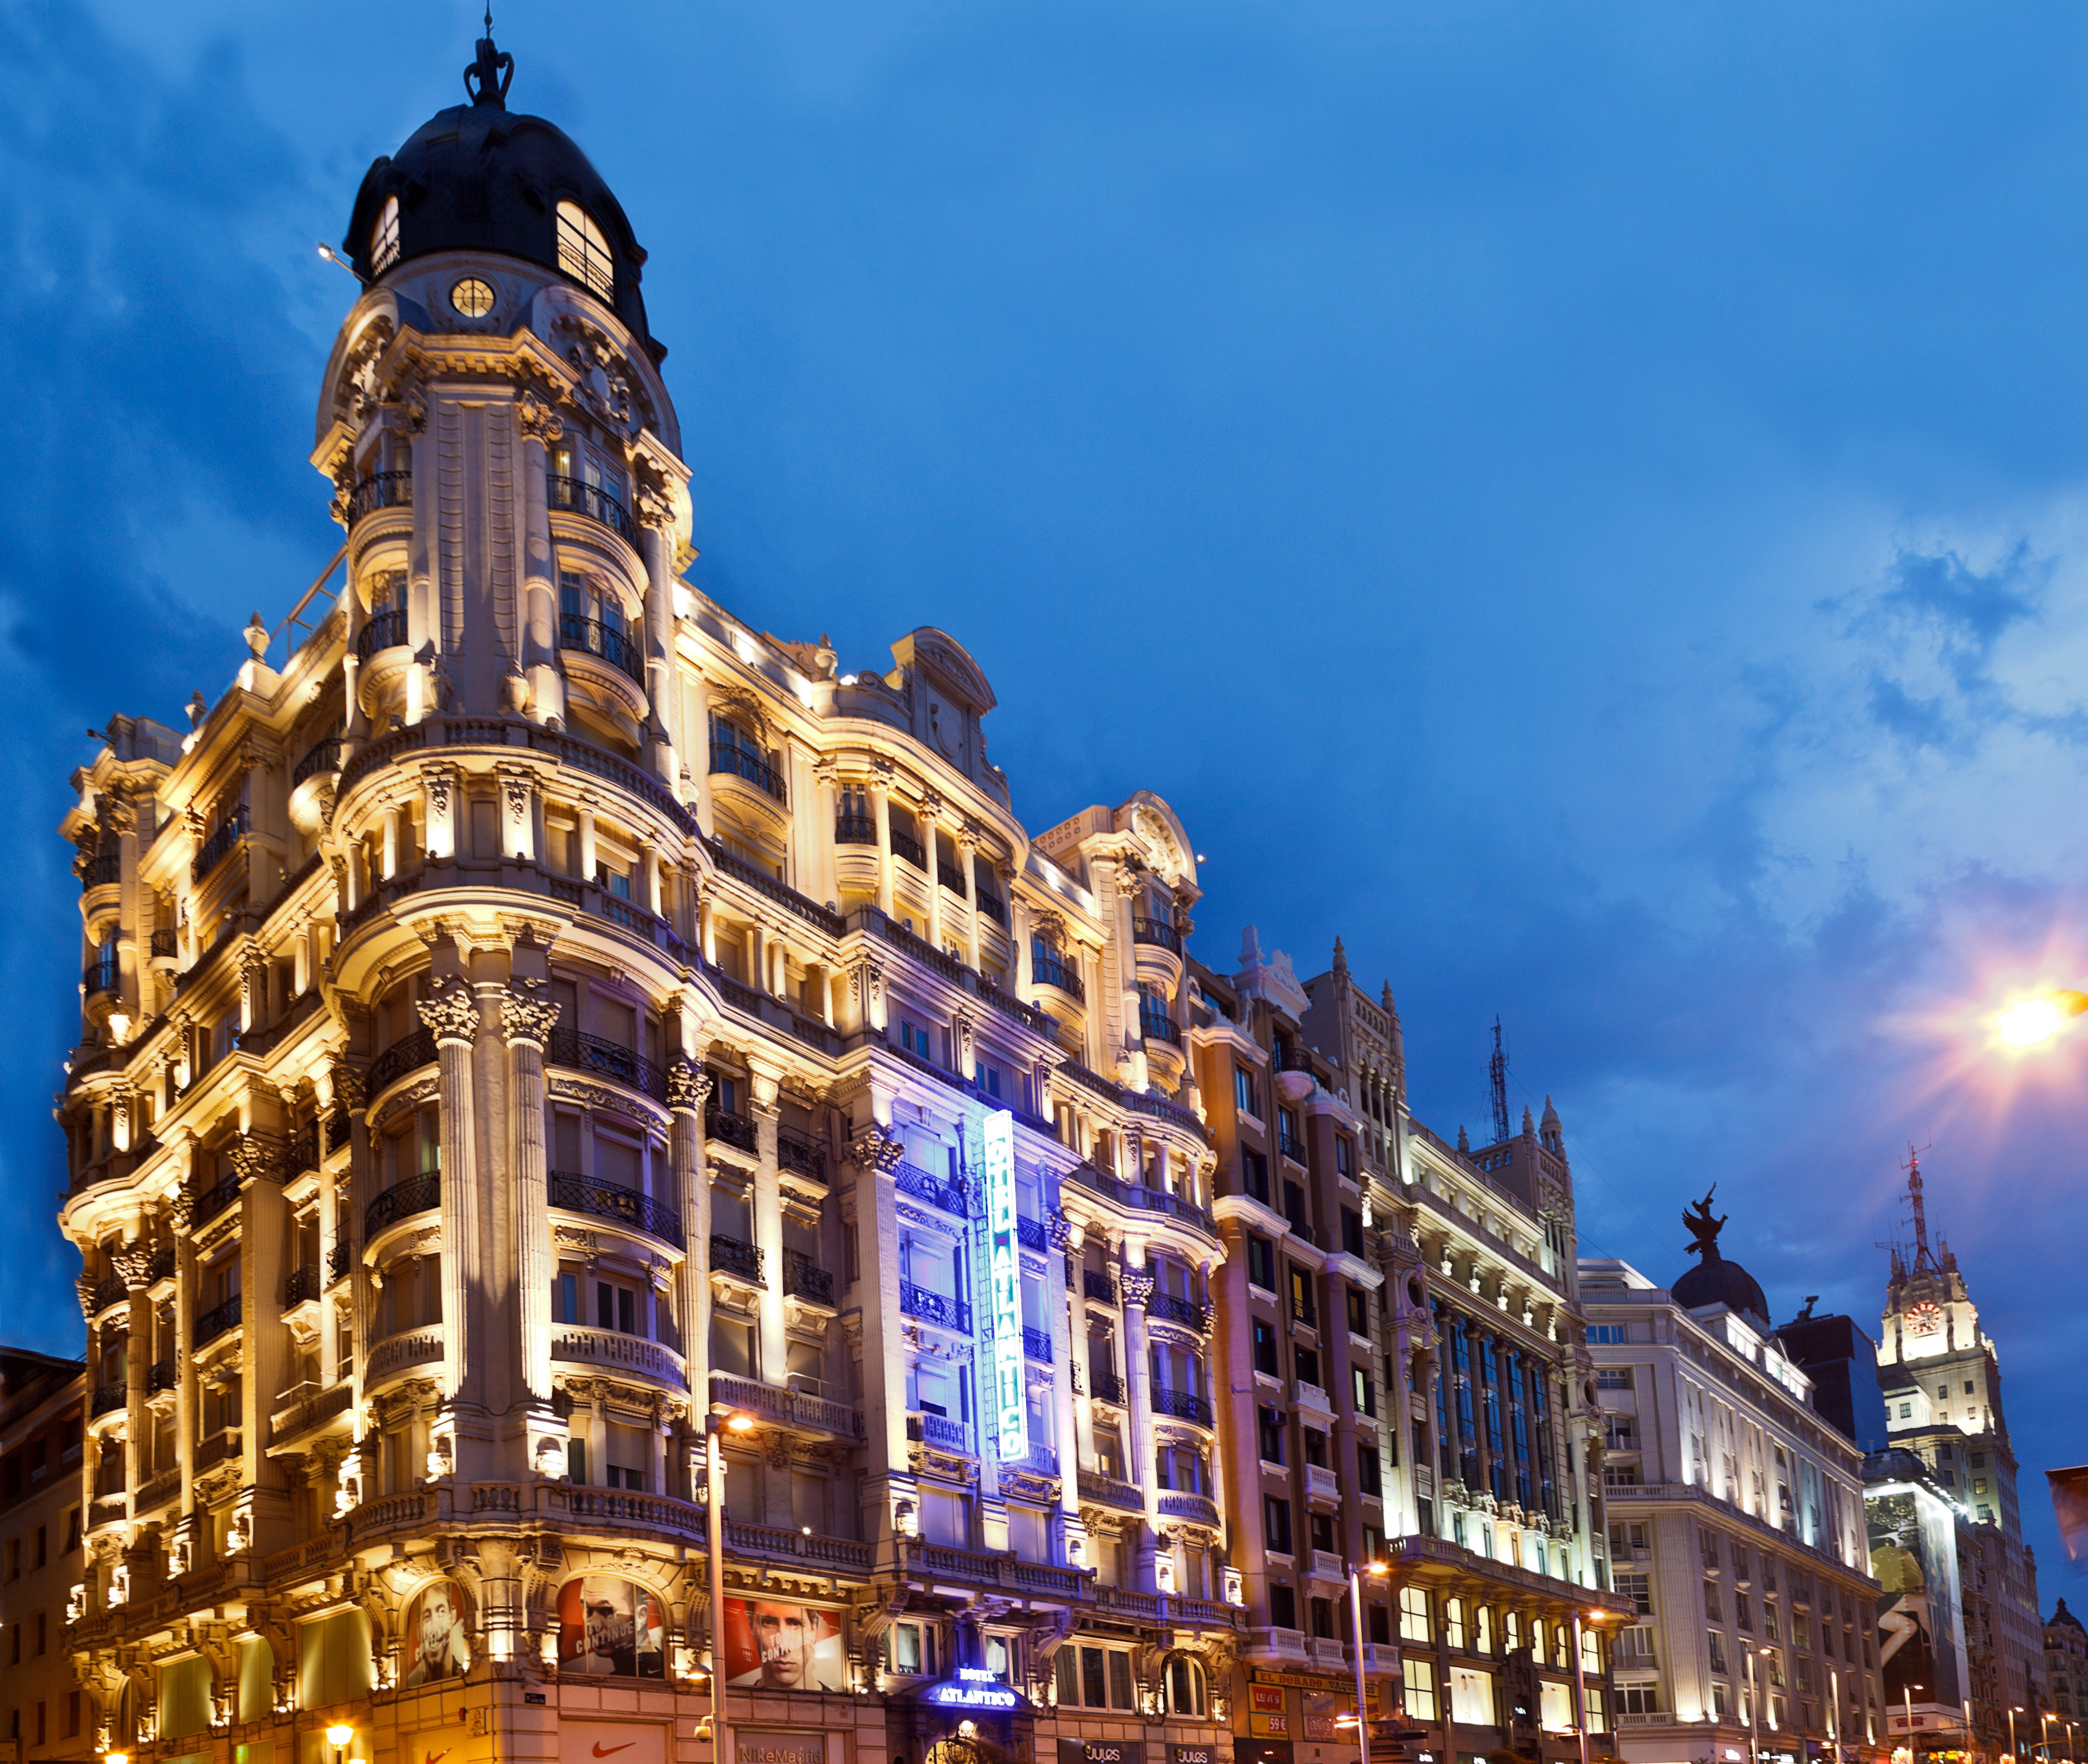 Excelencia en el diseño de hoteles españoles